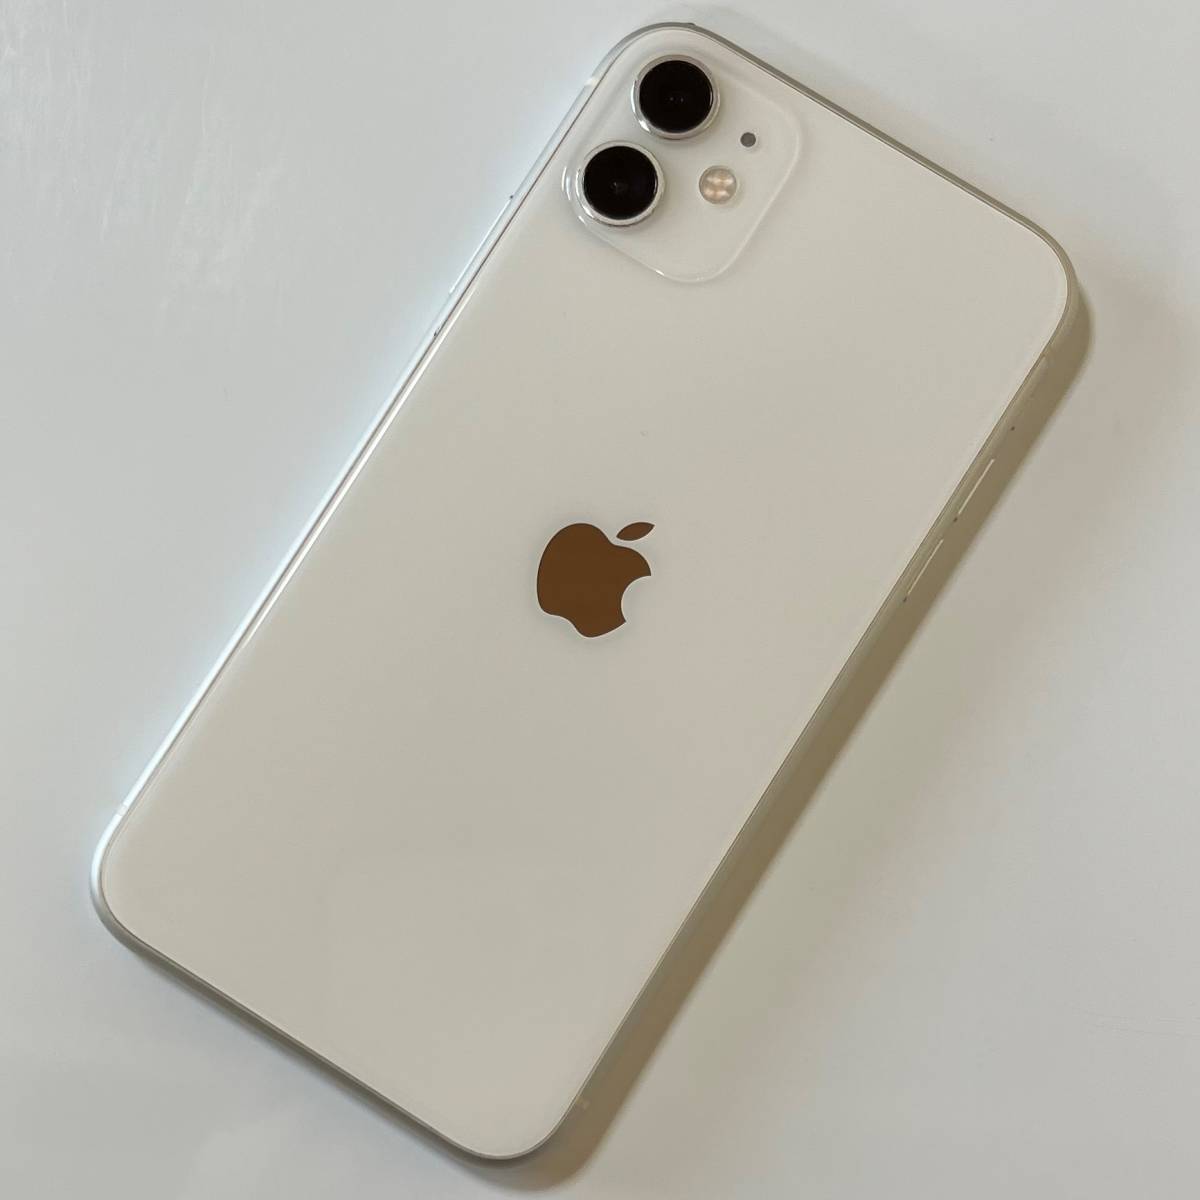 SIMフリー iPhone 11 ホワイト 128GB MWM22J/A バッテリー最大容量83